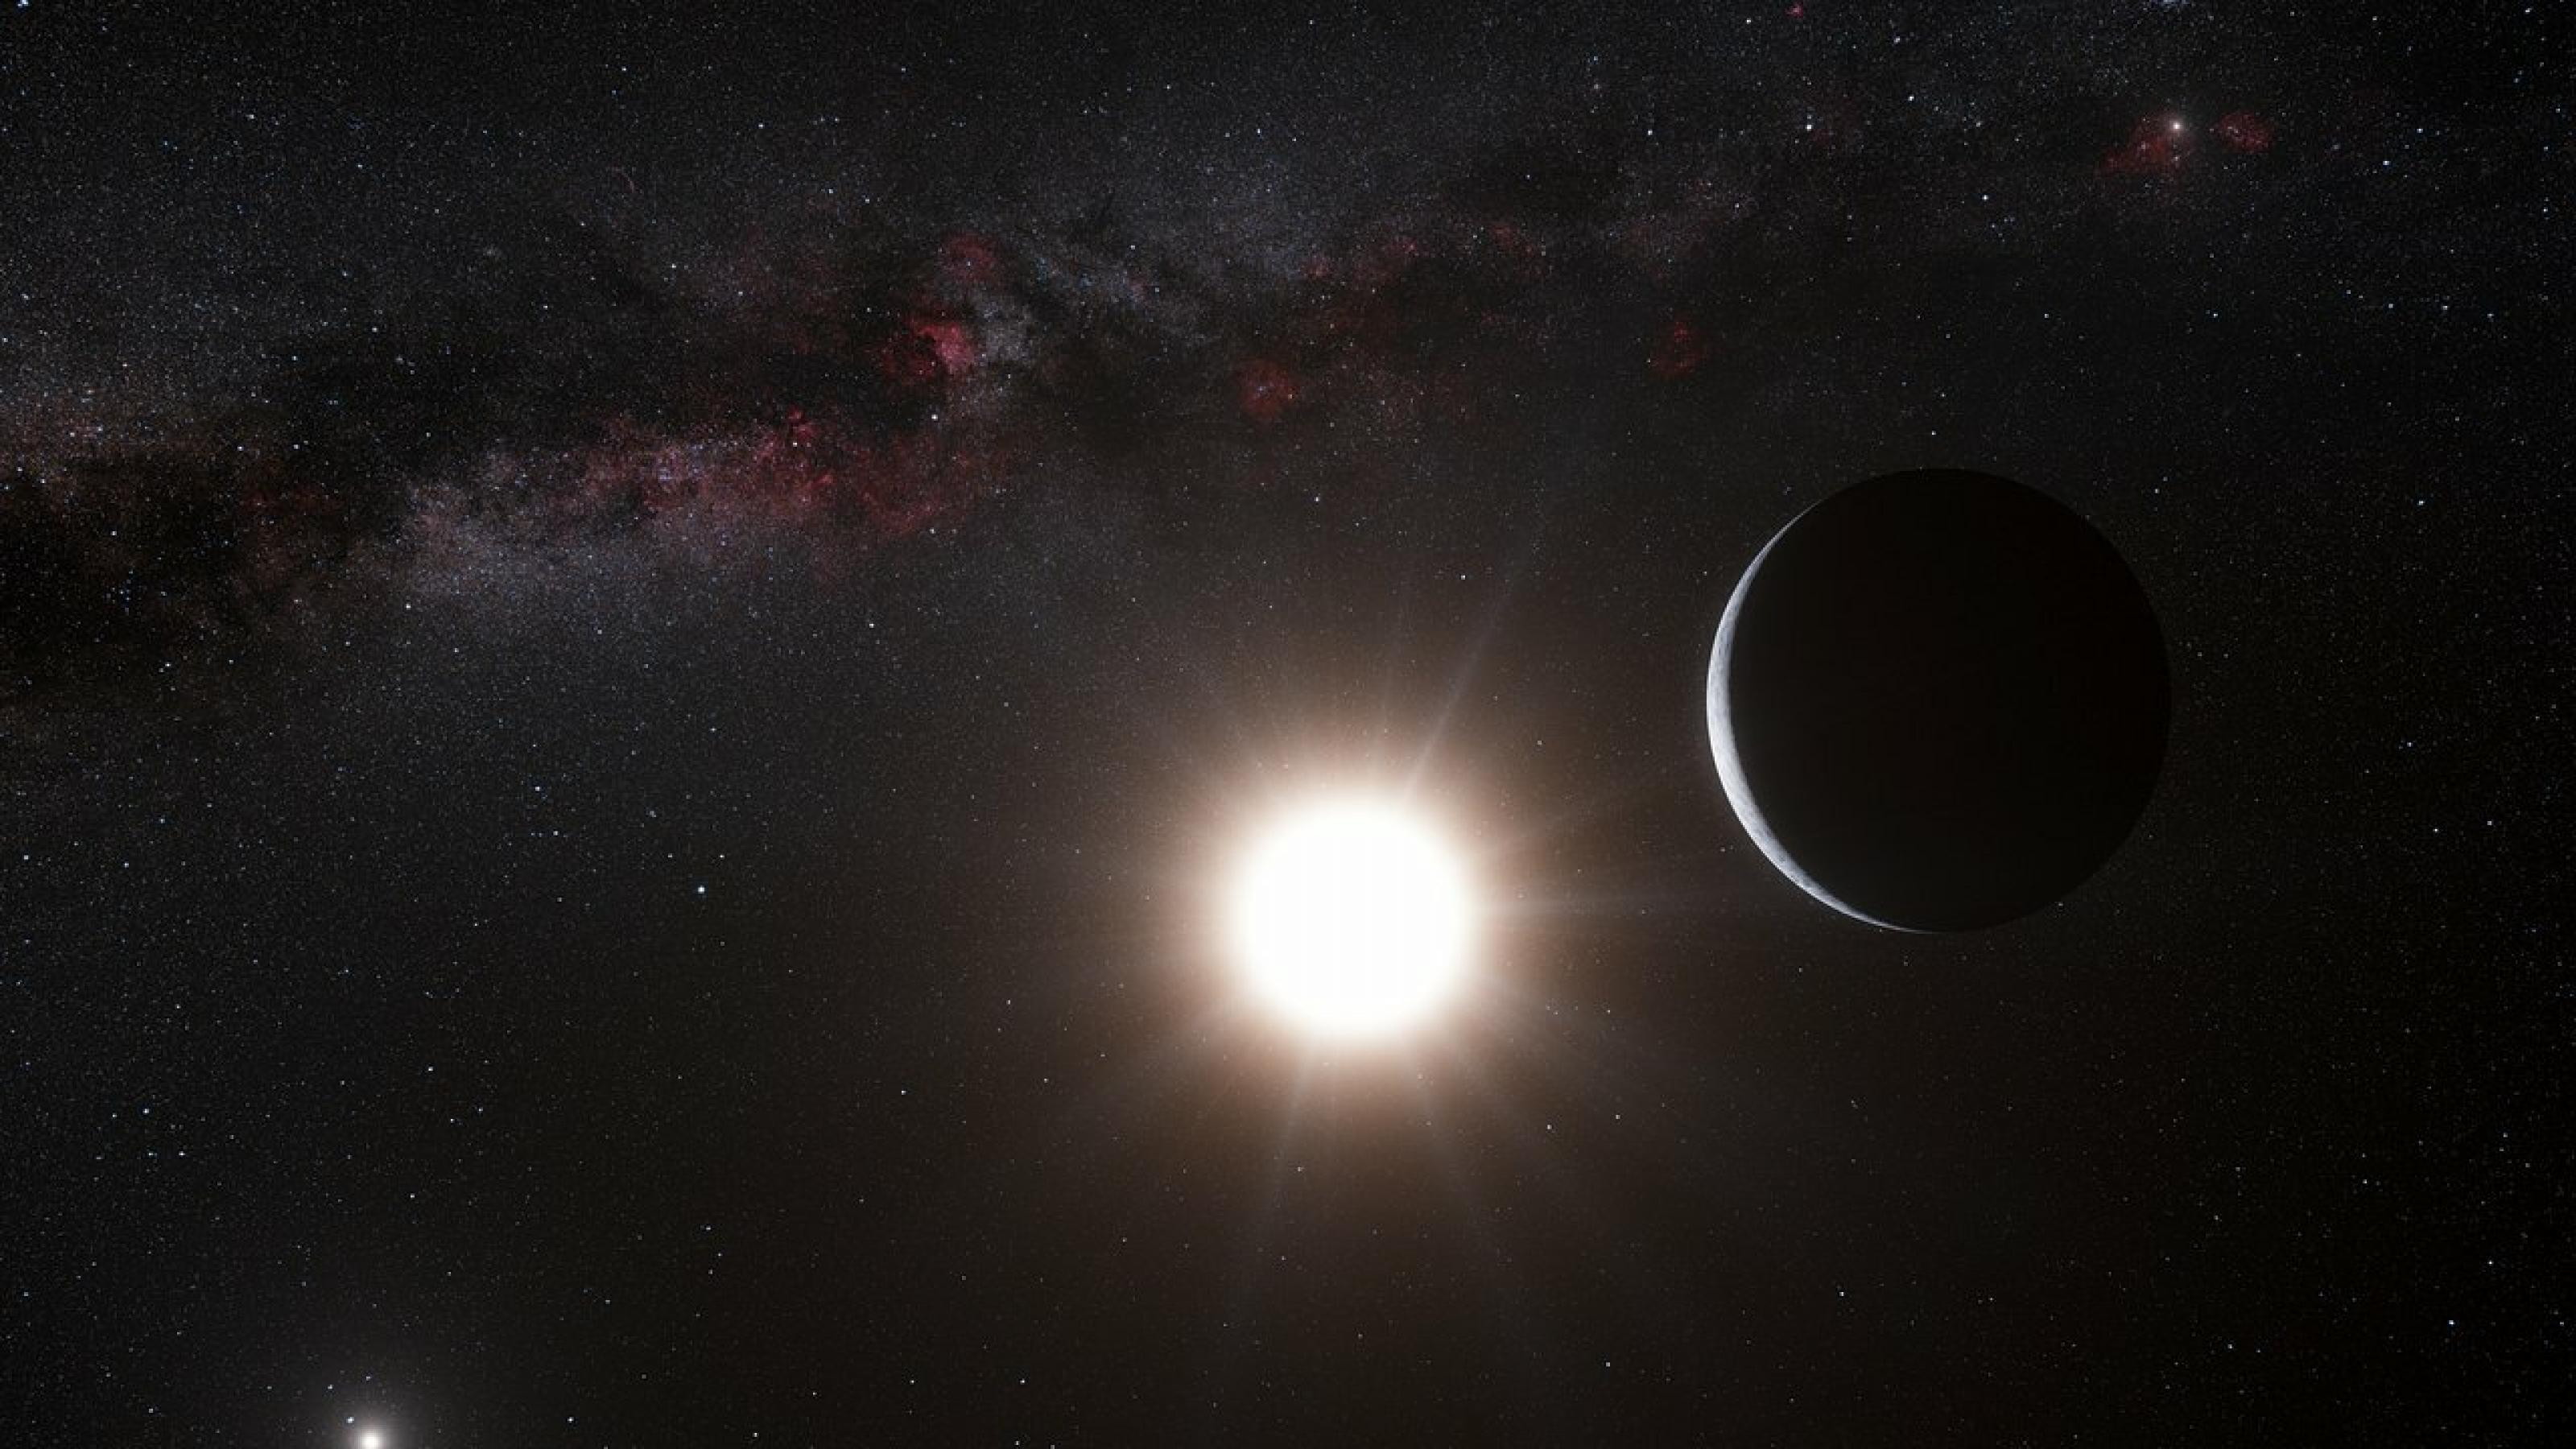 Die künstlerische Darstellung zeigt einen Exoplaneten, den es nicht gibt: Alpha Centauri Bb. Auch im Bild: Das Doppelsternsystem Alpha Centauri, das zusammen mit Proxima Centauri ein hierarchisches Dreifachsternsystem bildet.